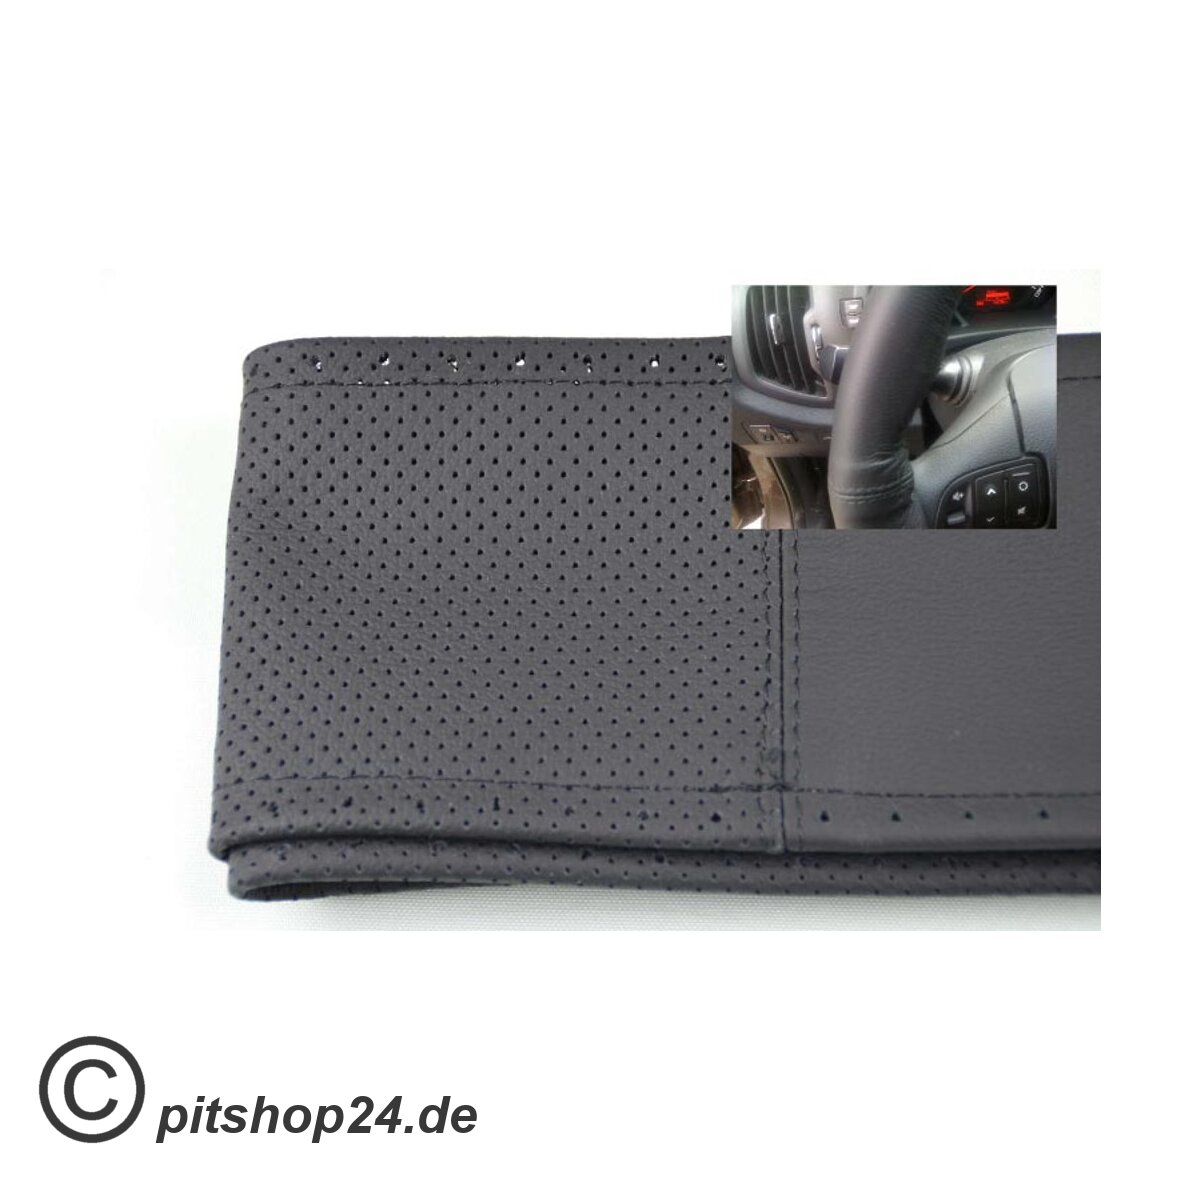 https://pitshop24.de/media/image/product/412/lg/lenkradschoner-lenkradbezug-lenkradhuelle-leder-groesse-o-m-37-38-cm-perforiert-schwarz.jpg